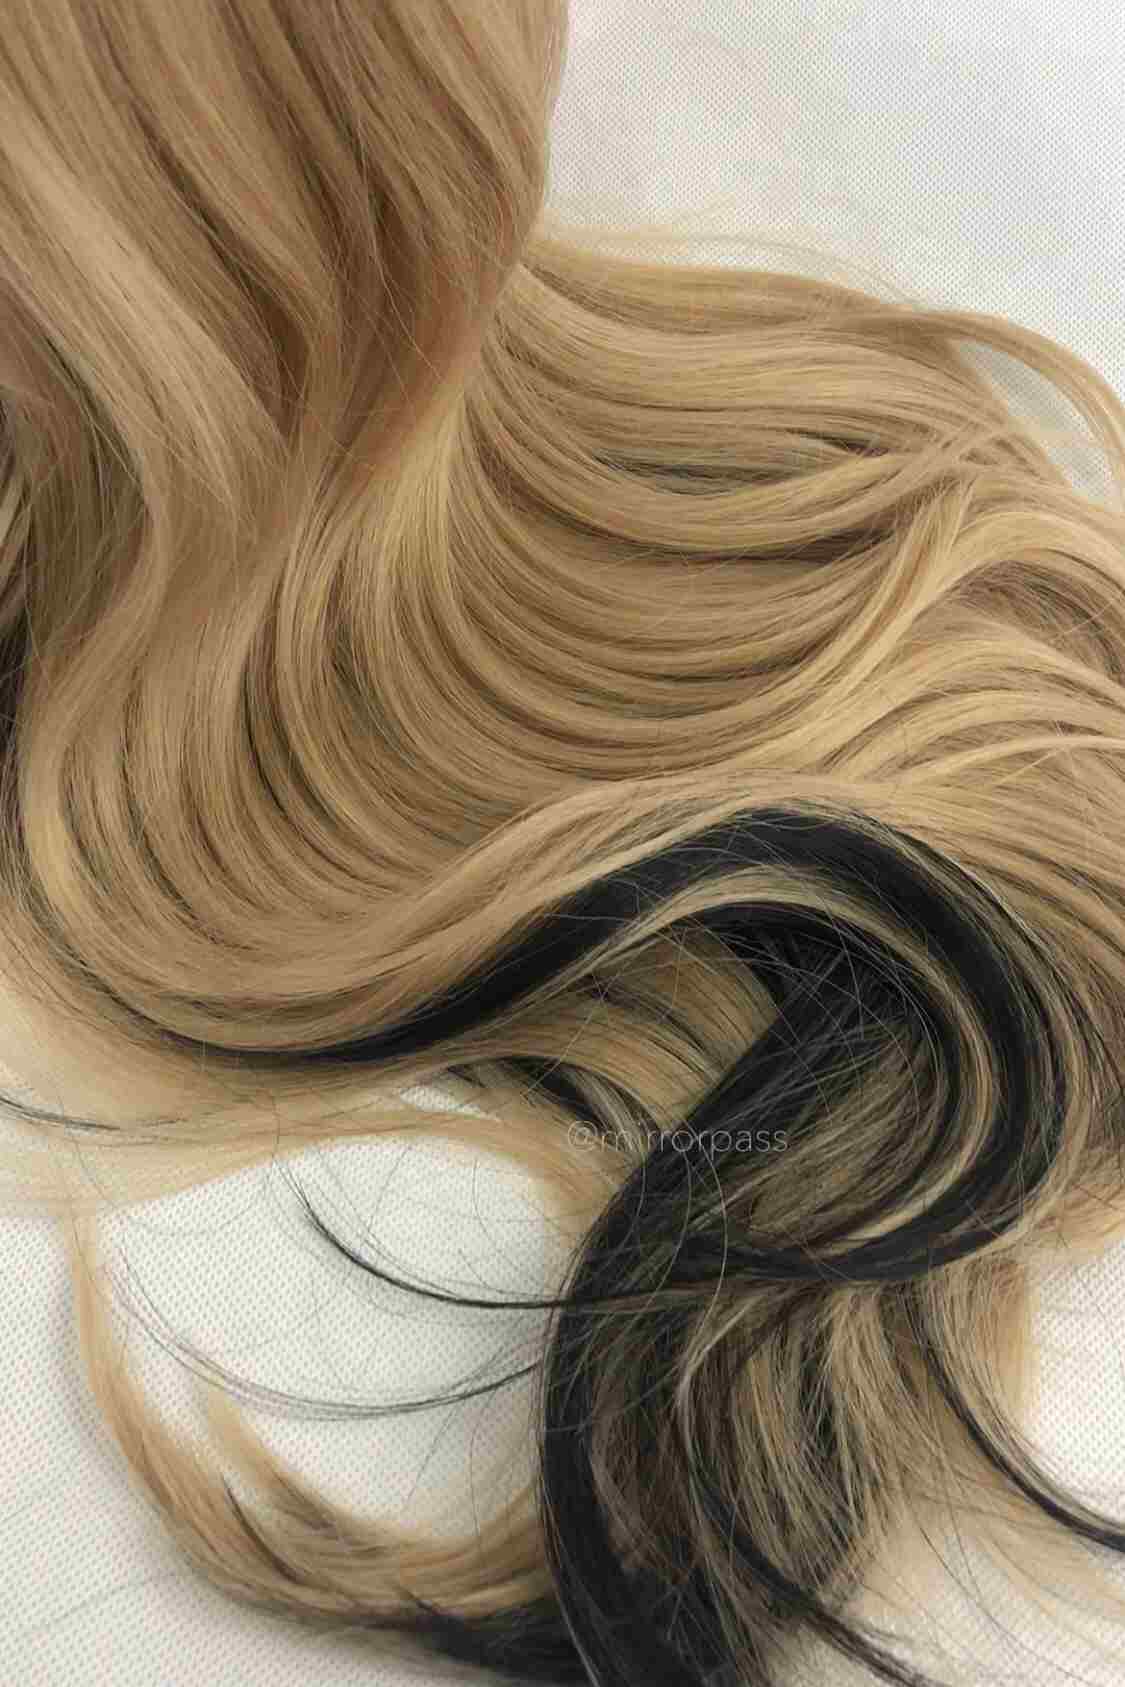 Sofia | rose cap heat resistant wig